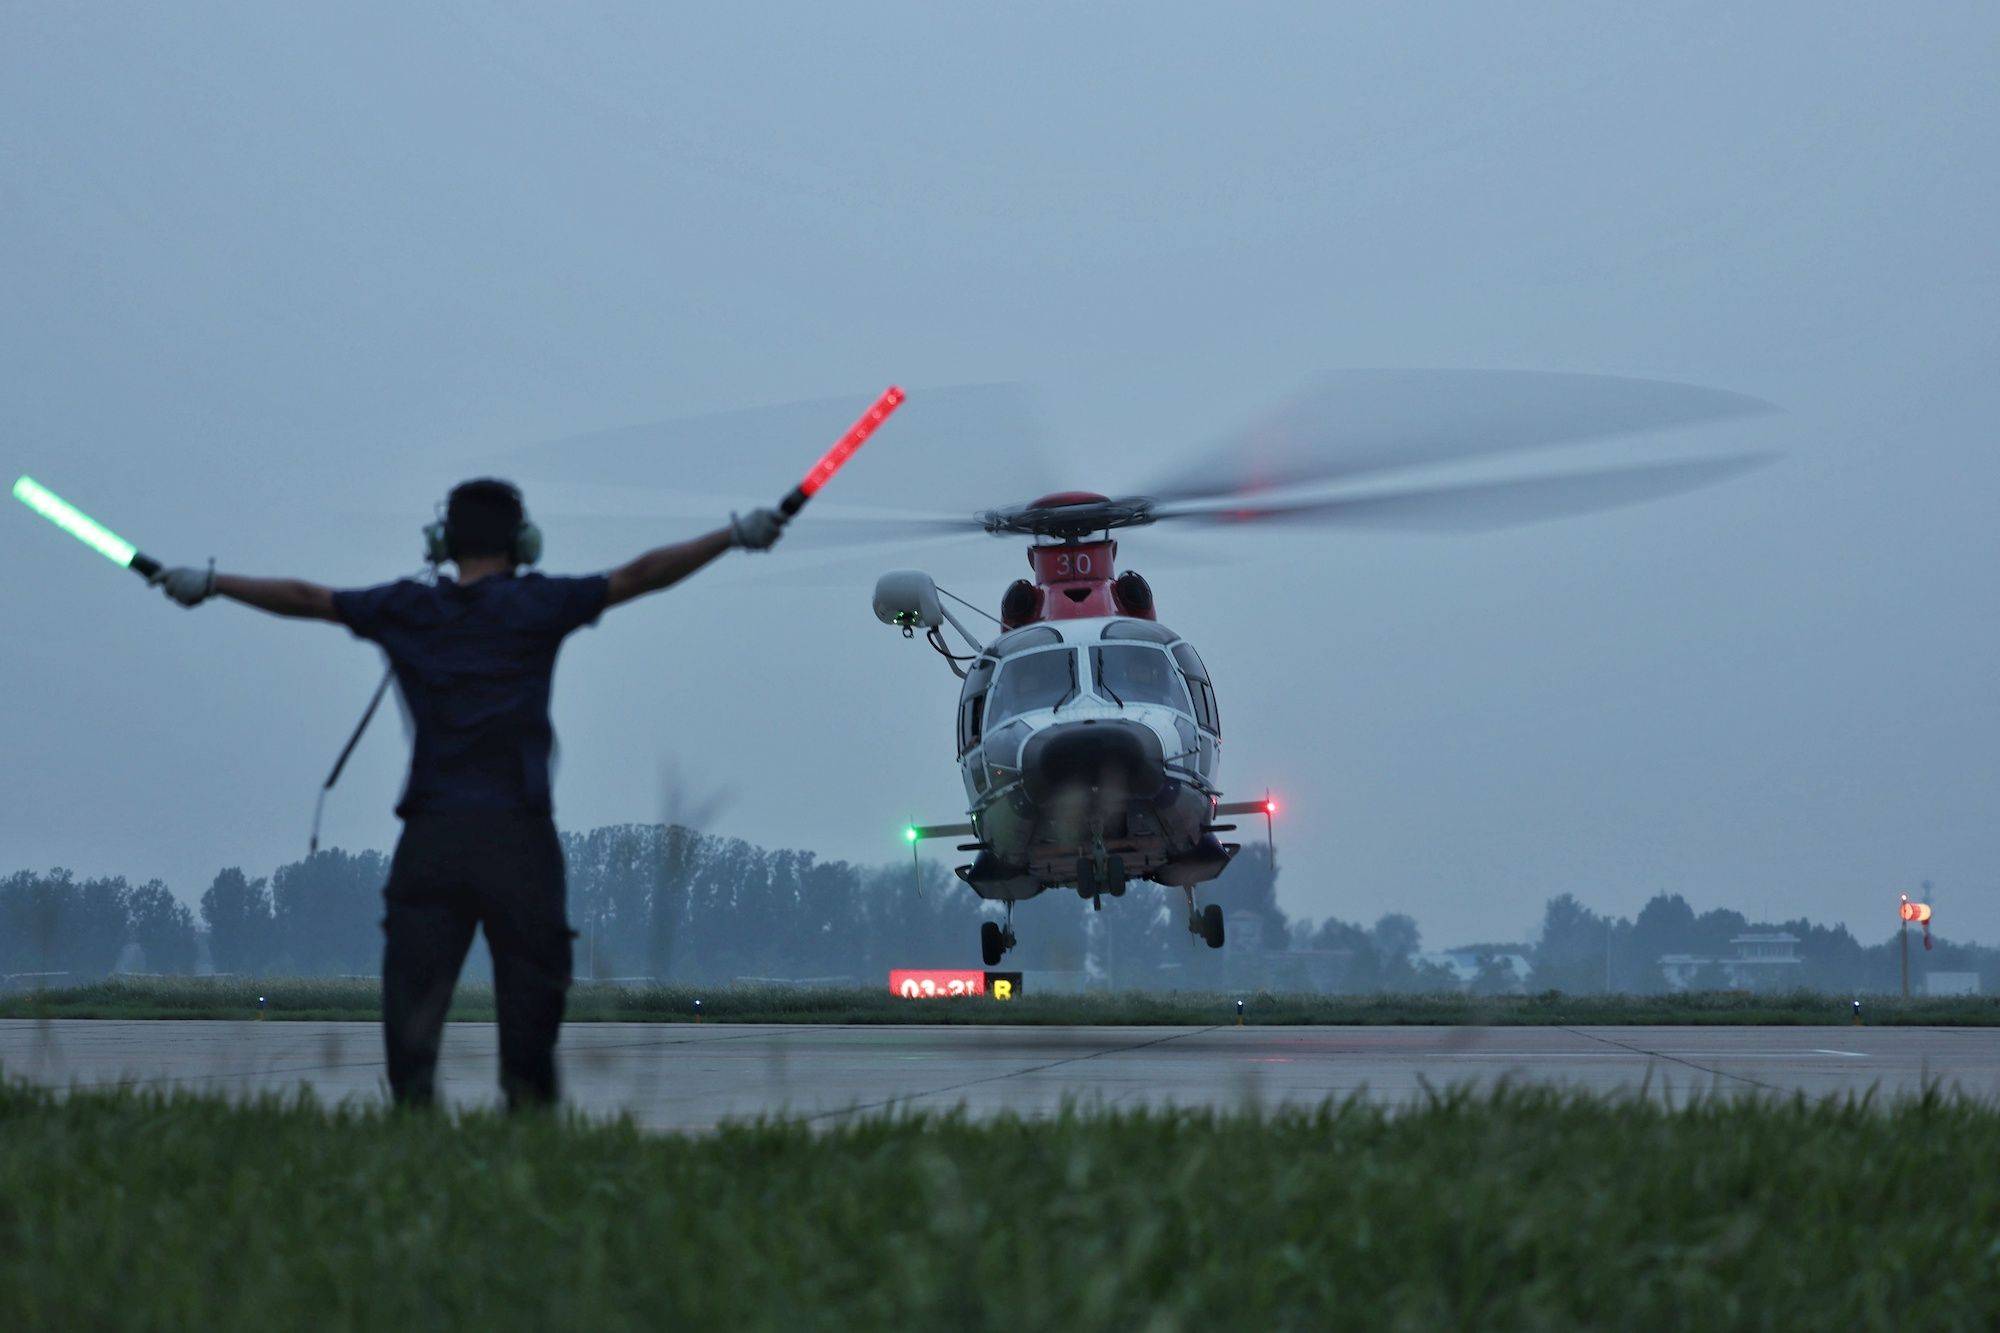 涿州,天气渐渐昏暗后,救援直升机完成了当日的任务后降落在机场